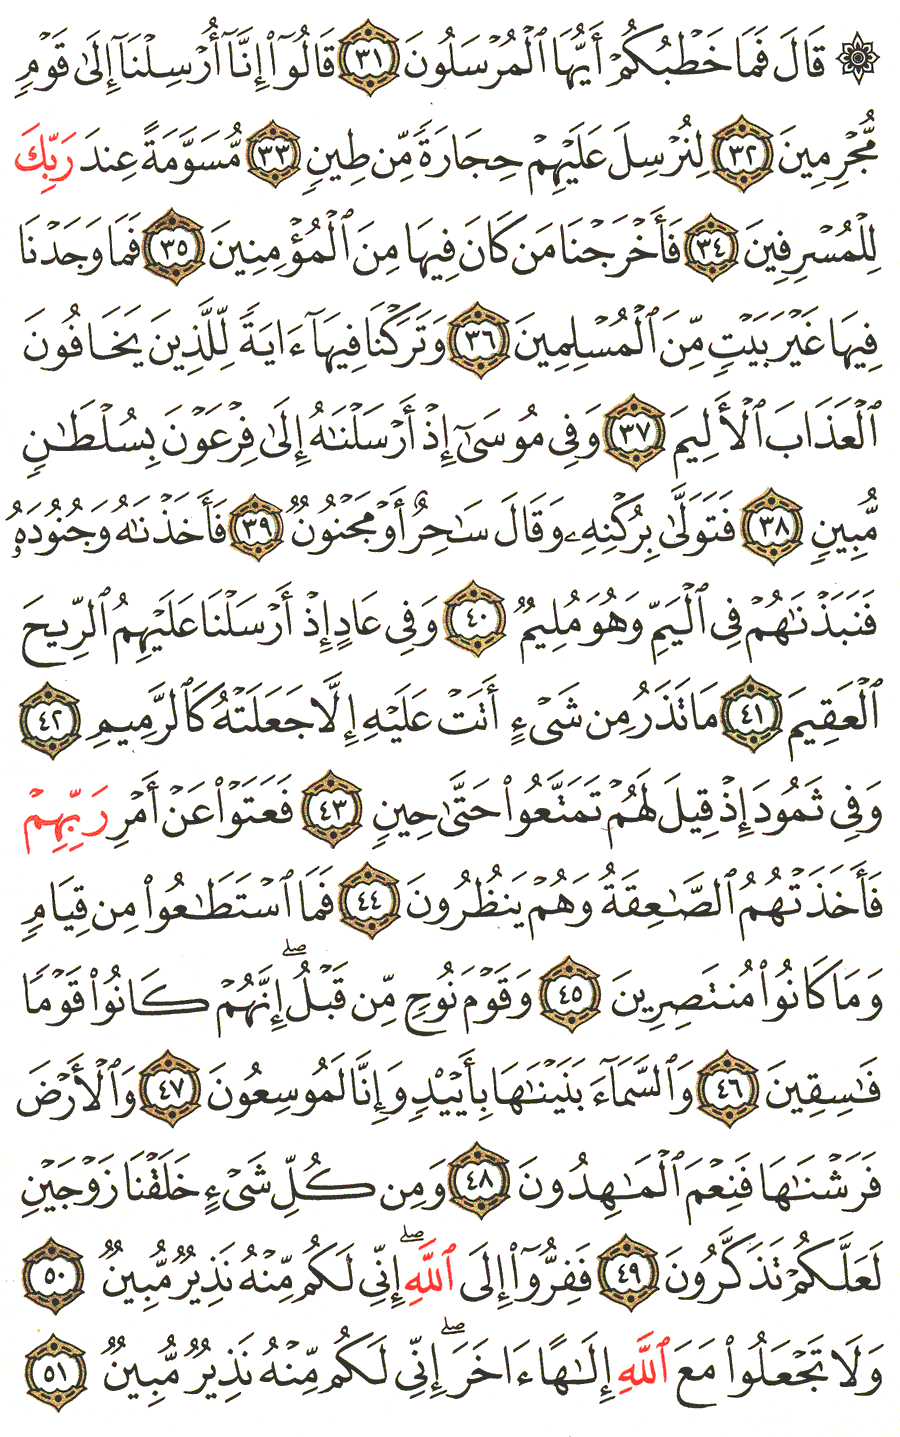 الصفحة 522 من القرآن الكريم